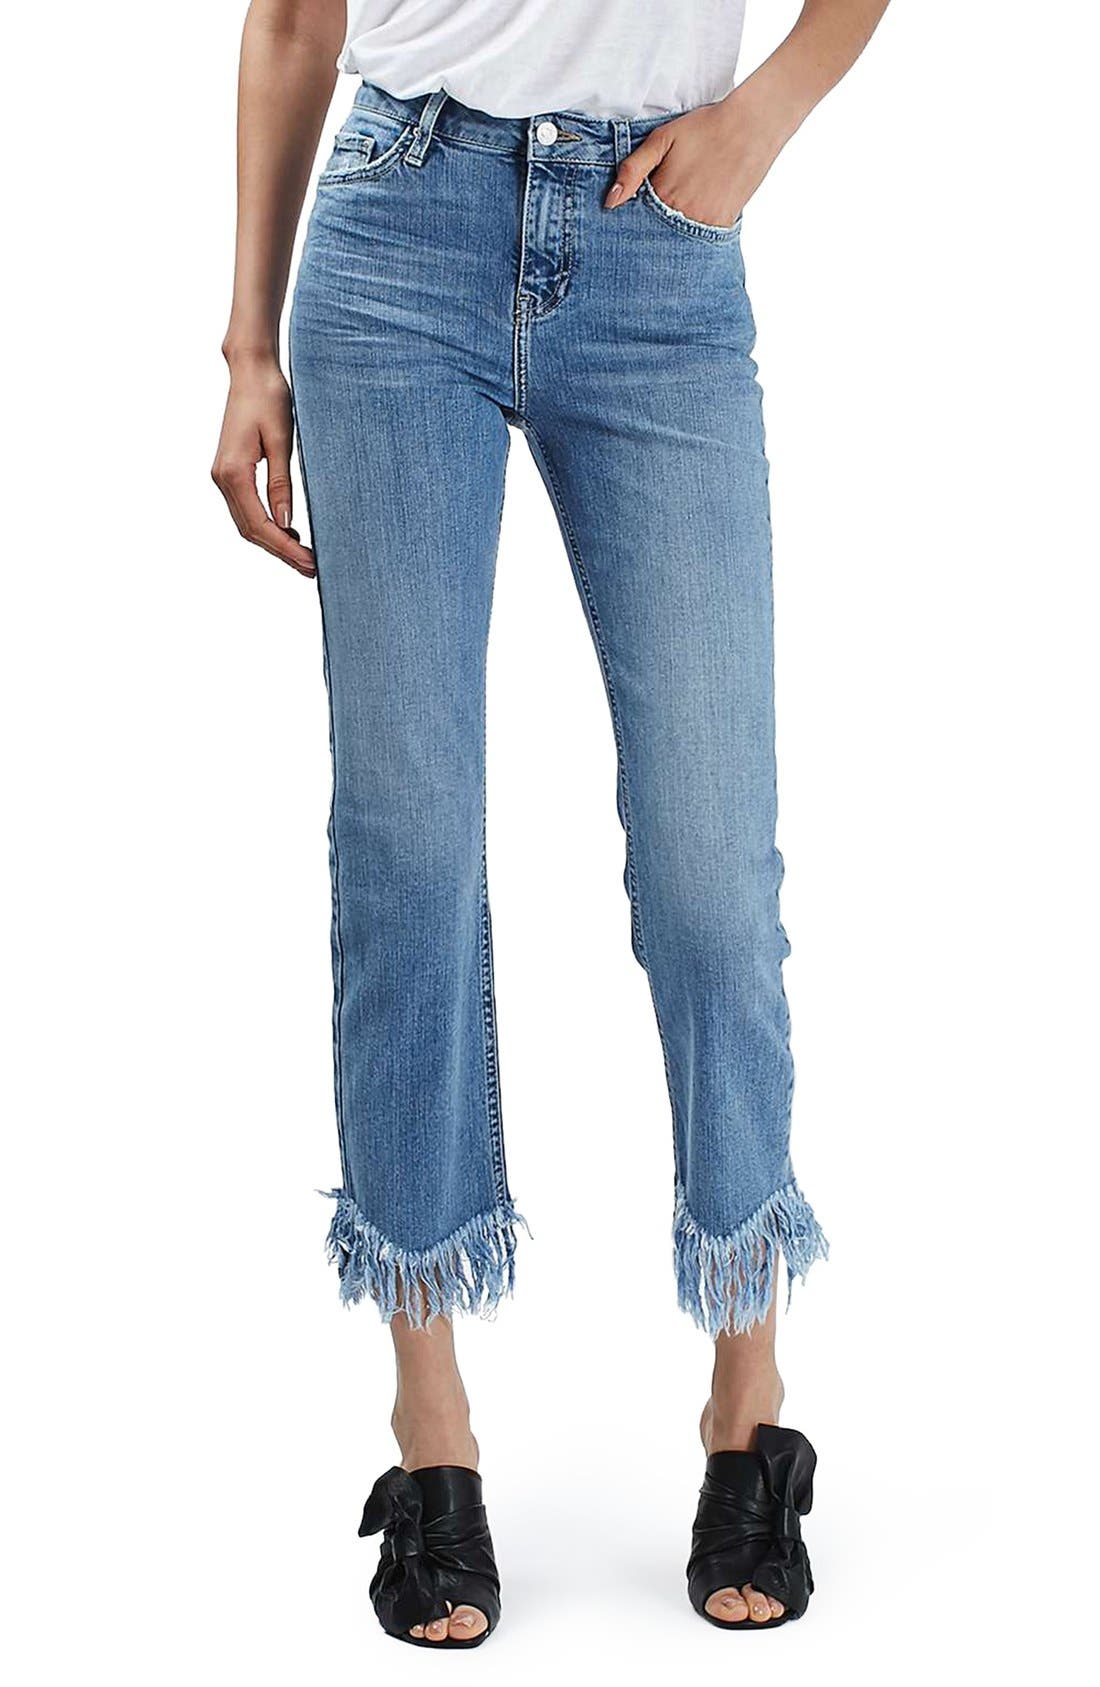 topshop fringe jeans